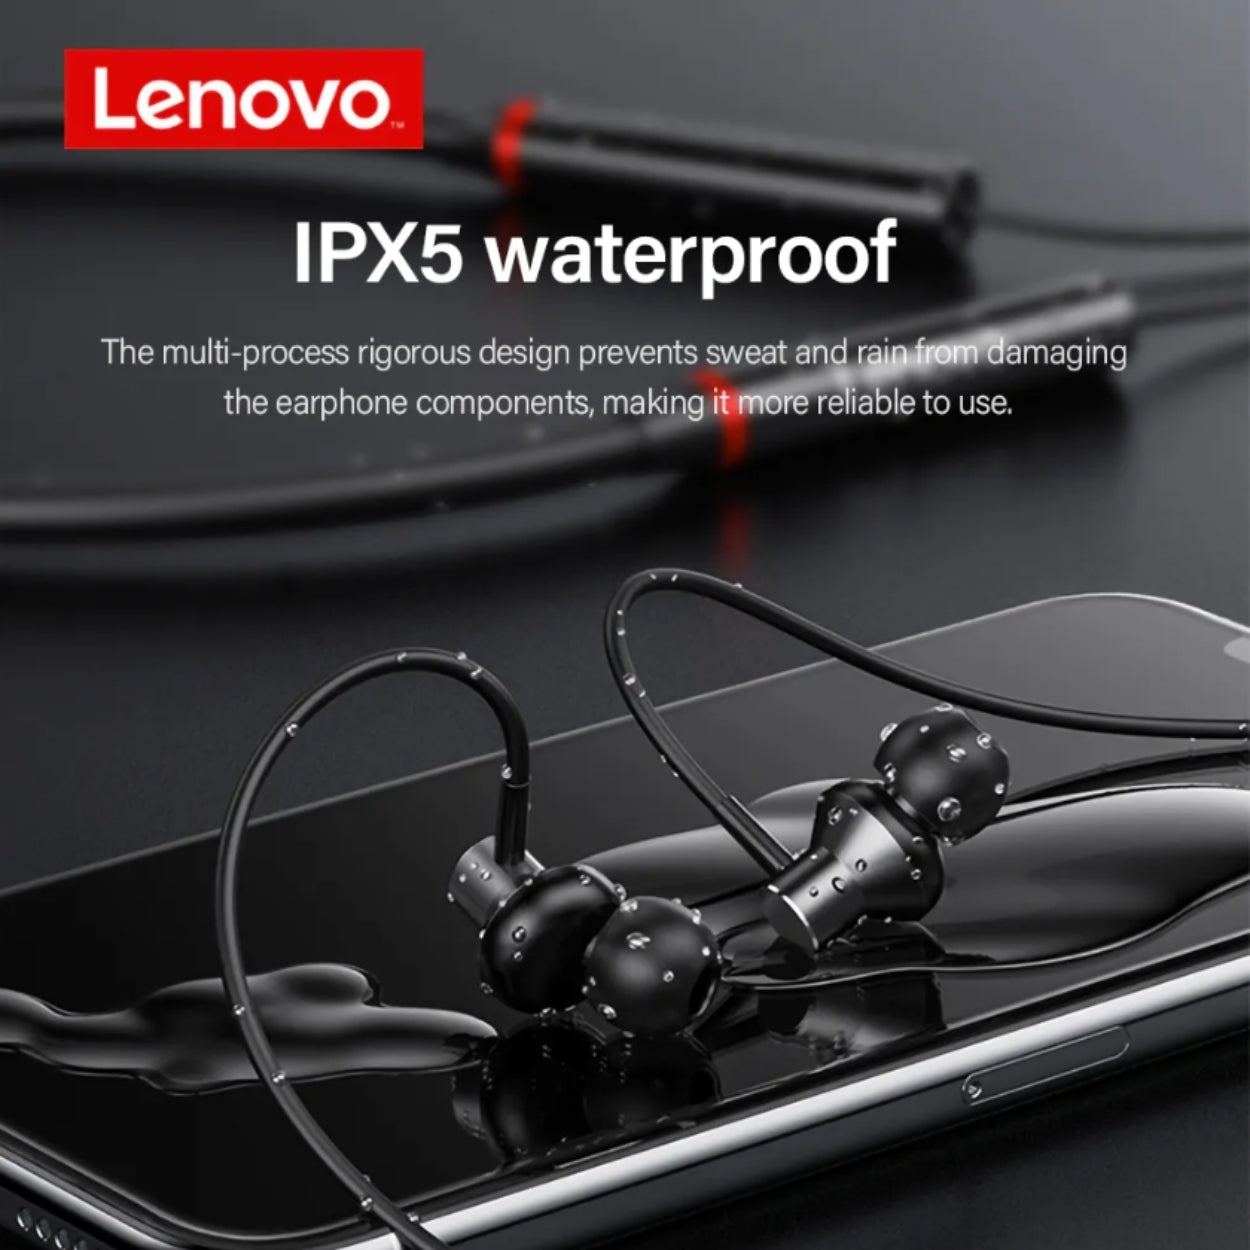 PR Audifono Bluetooth Lenovo He05x negro + Mochila clásica